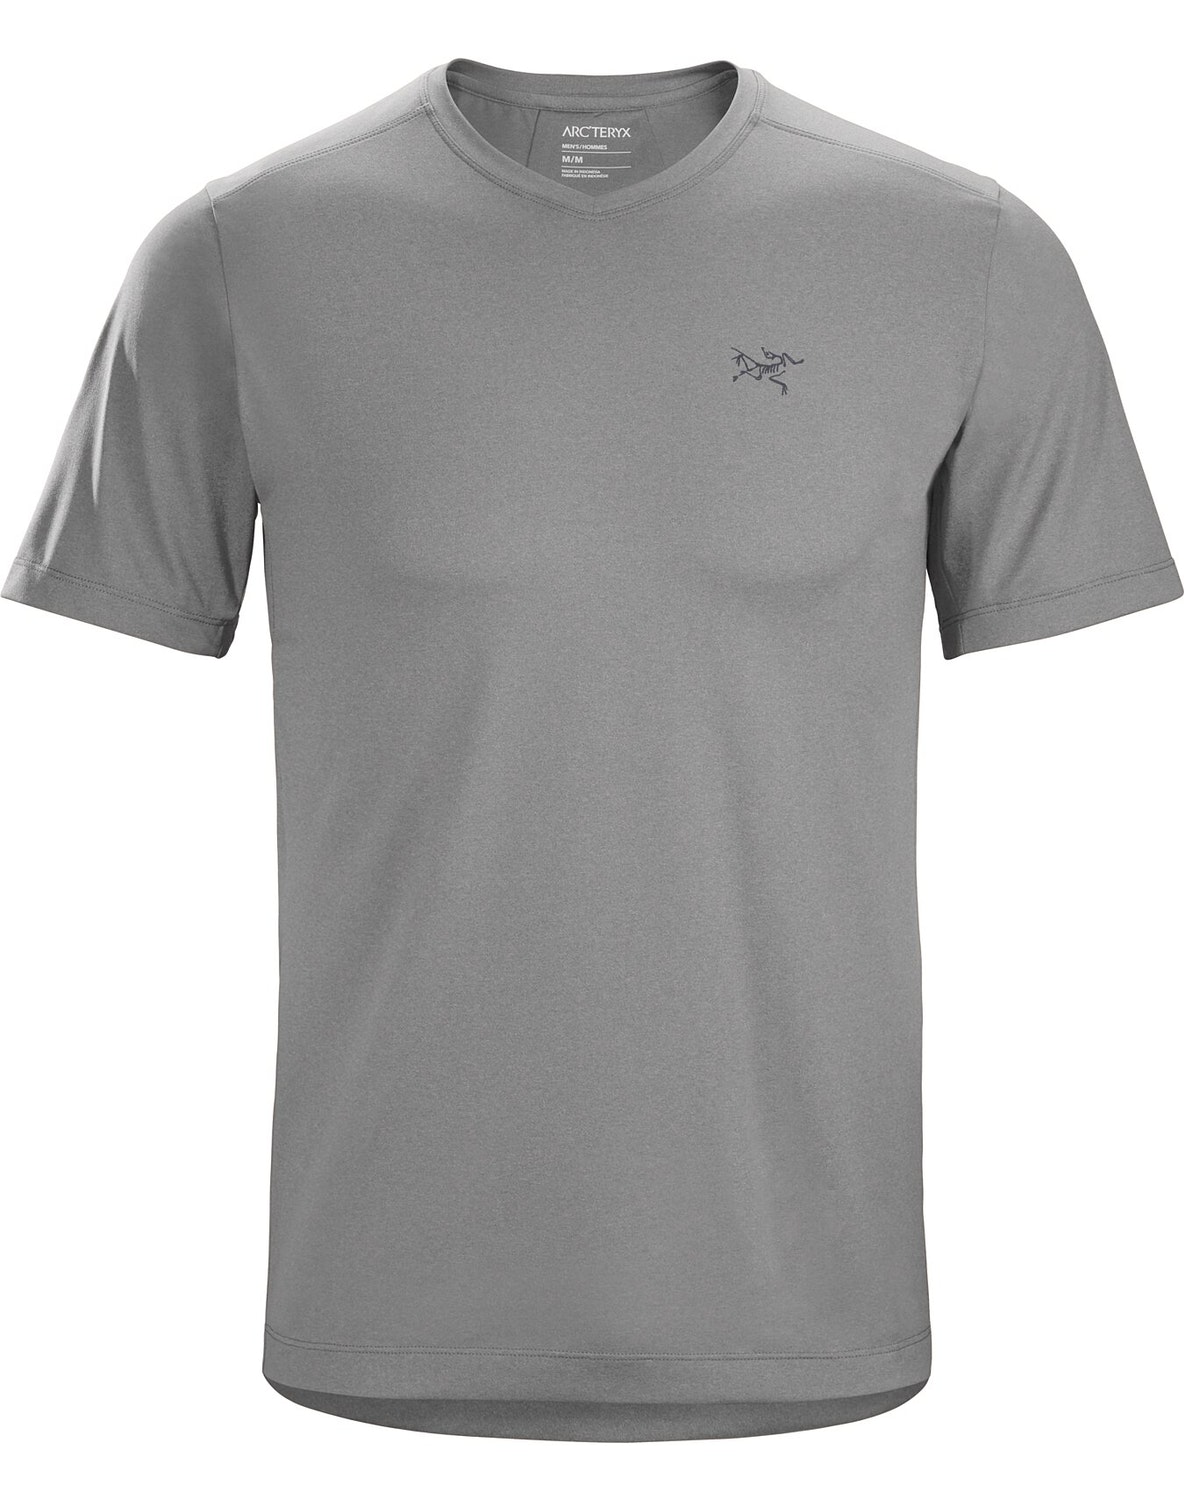 T-shirt Arc'teryx Remige Uomo Grigie - IT-3543654